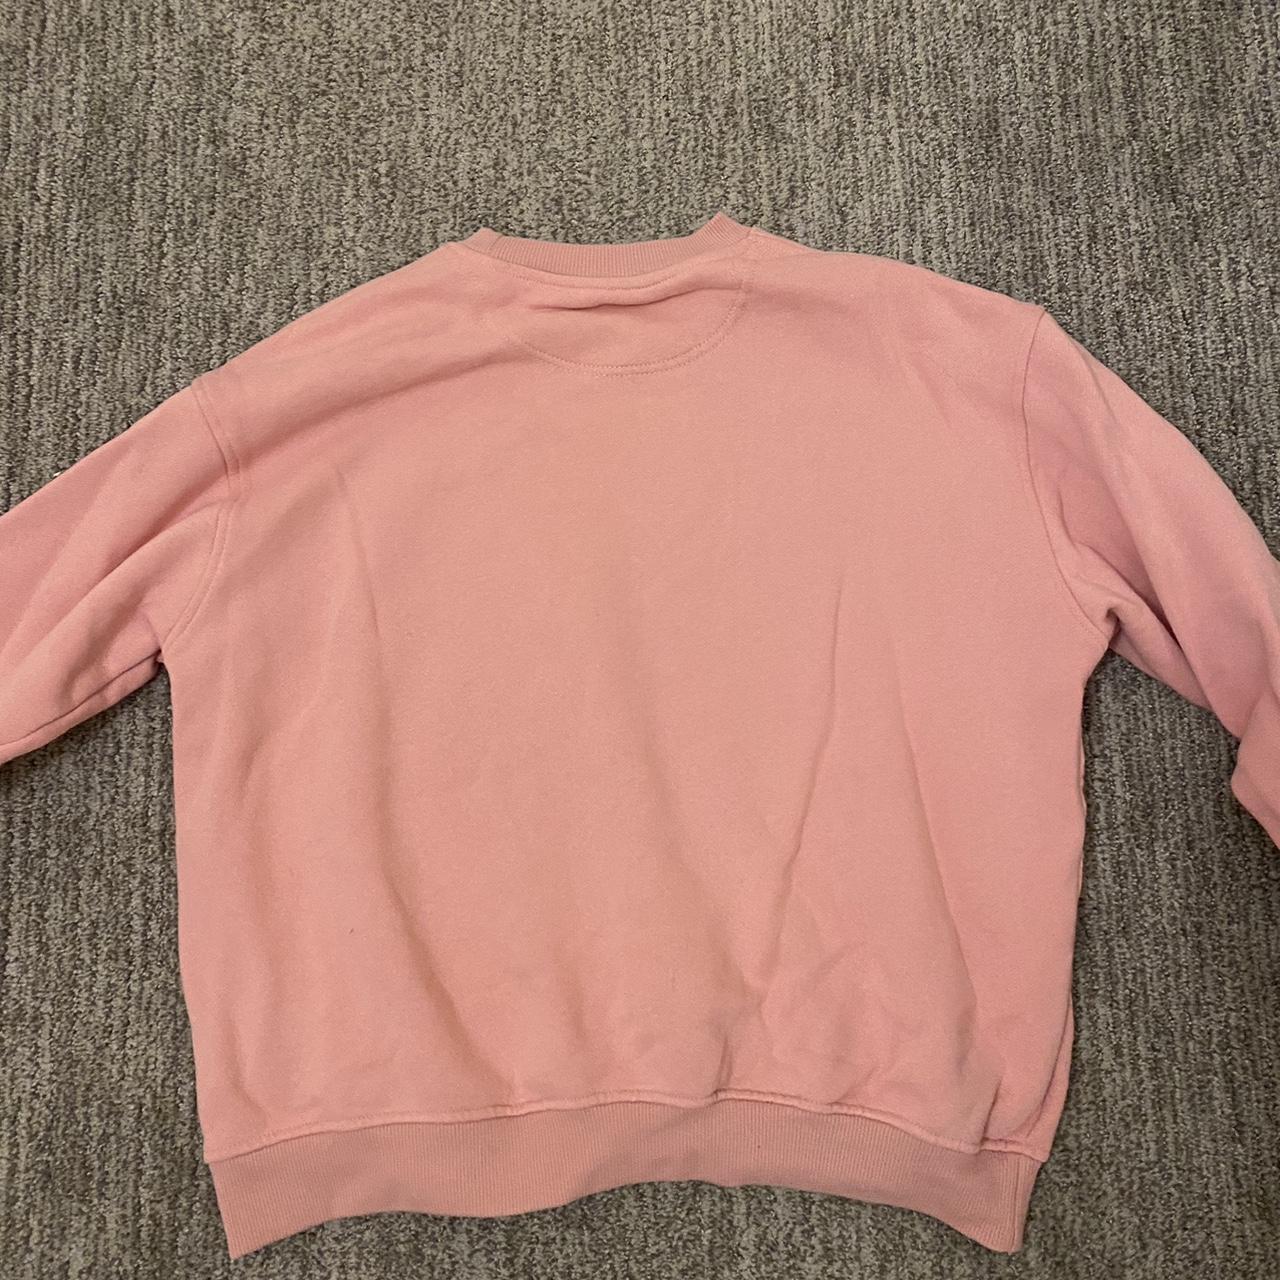 Pink super soft periwinkle sweatshirt/hoodie. Color - Depop